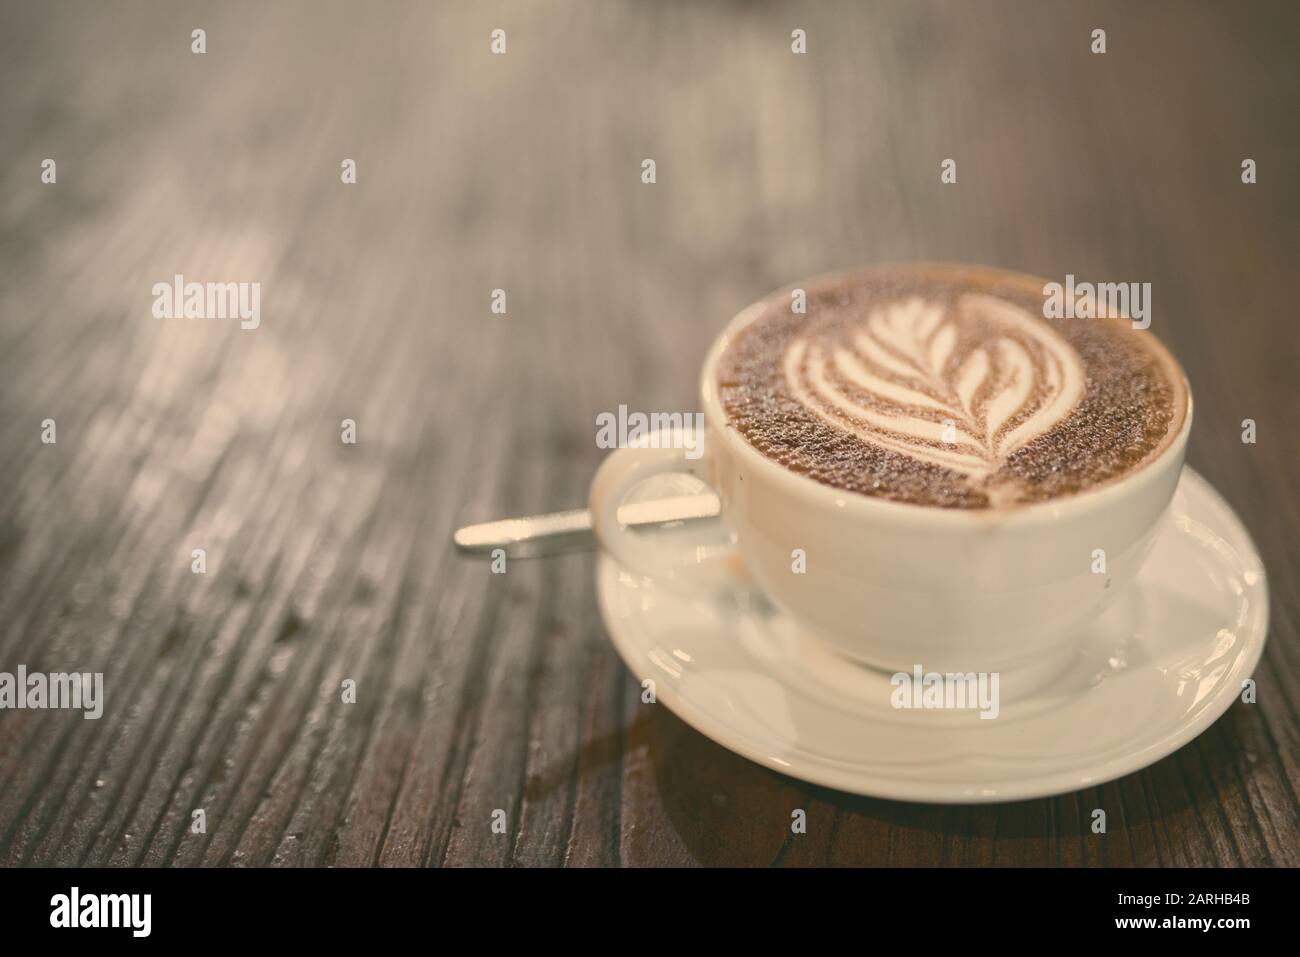 Vista superiore del caffè caffé mocha noto anche come Mocaccino Foto Stock